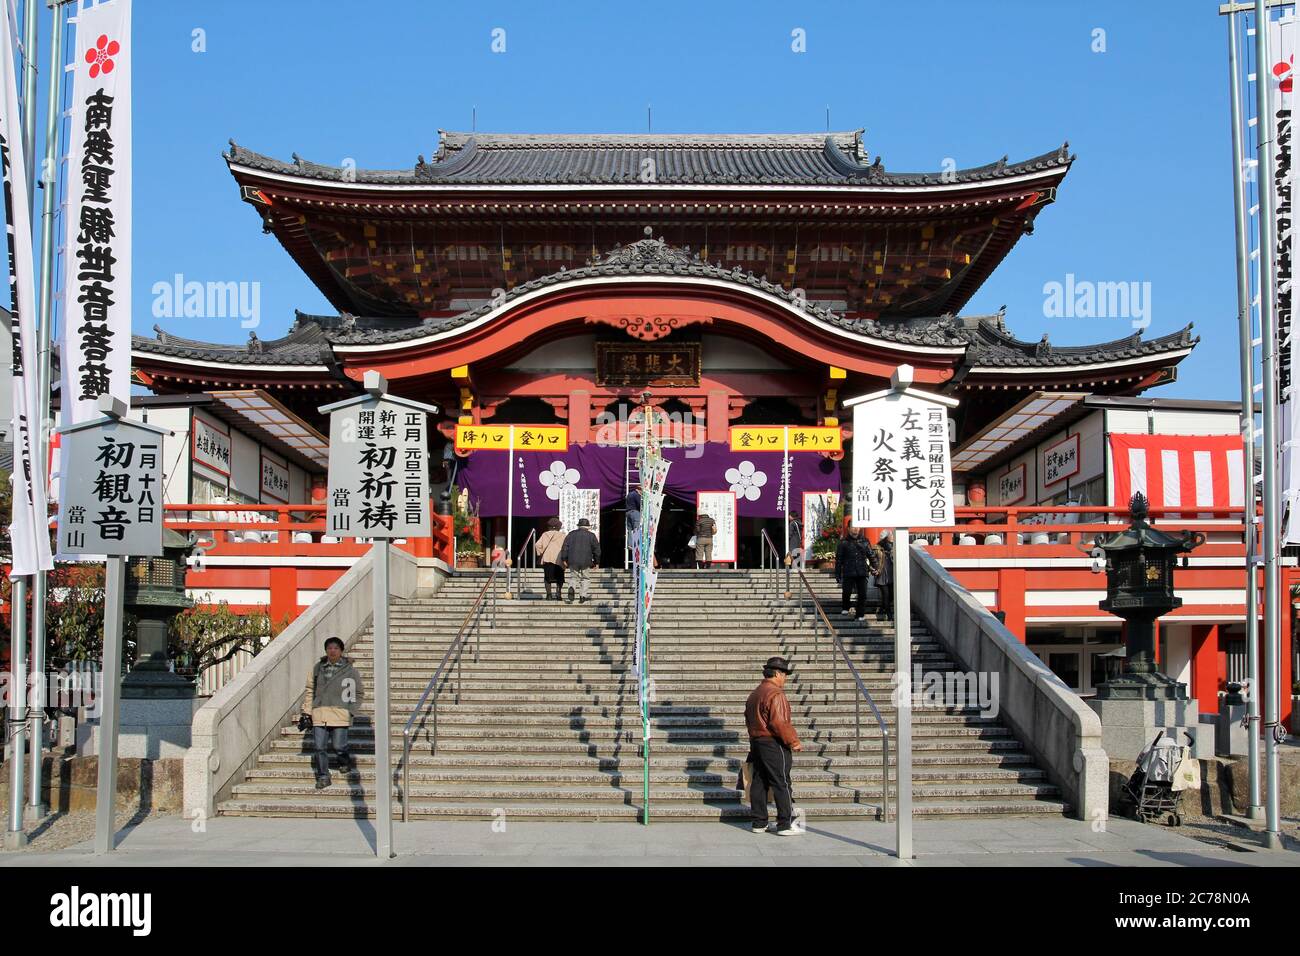 NAGOYA, JAPAN - DEZEMBER 29: OSU Kanon Tempel in Nagoya, Japan Vorbereitung auf die Neujahrsfeier 2012. OSU Kanon ist ein buddhistischer Tempel (Shingon-Sekte). Stockfoto